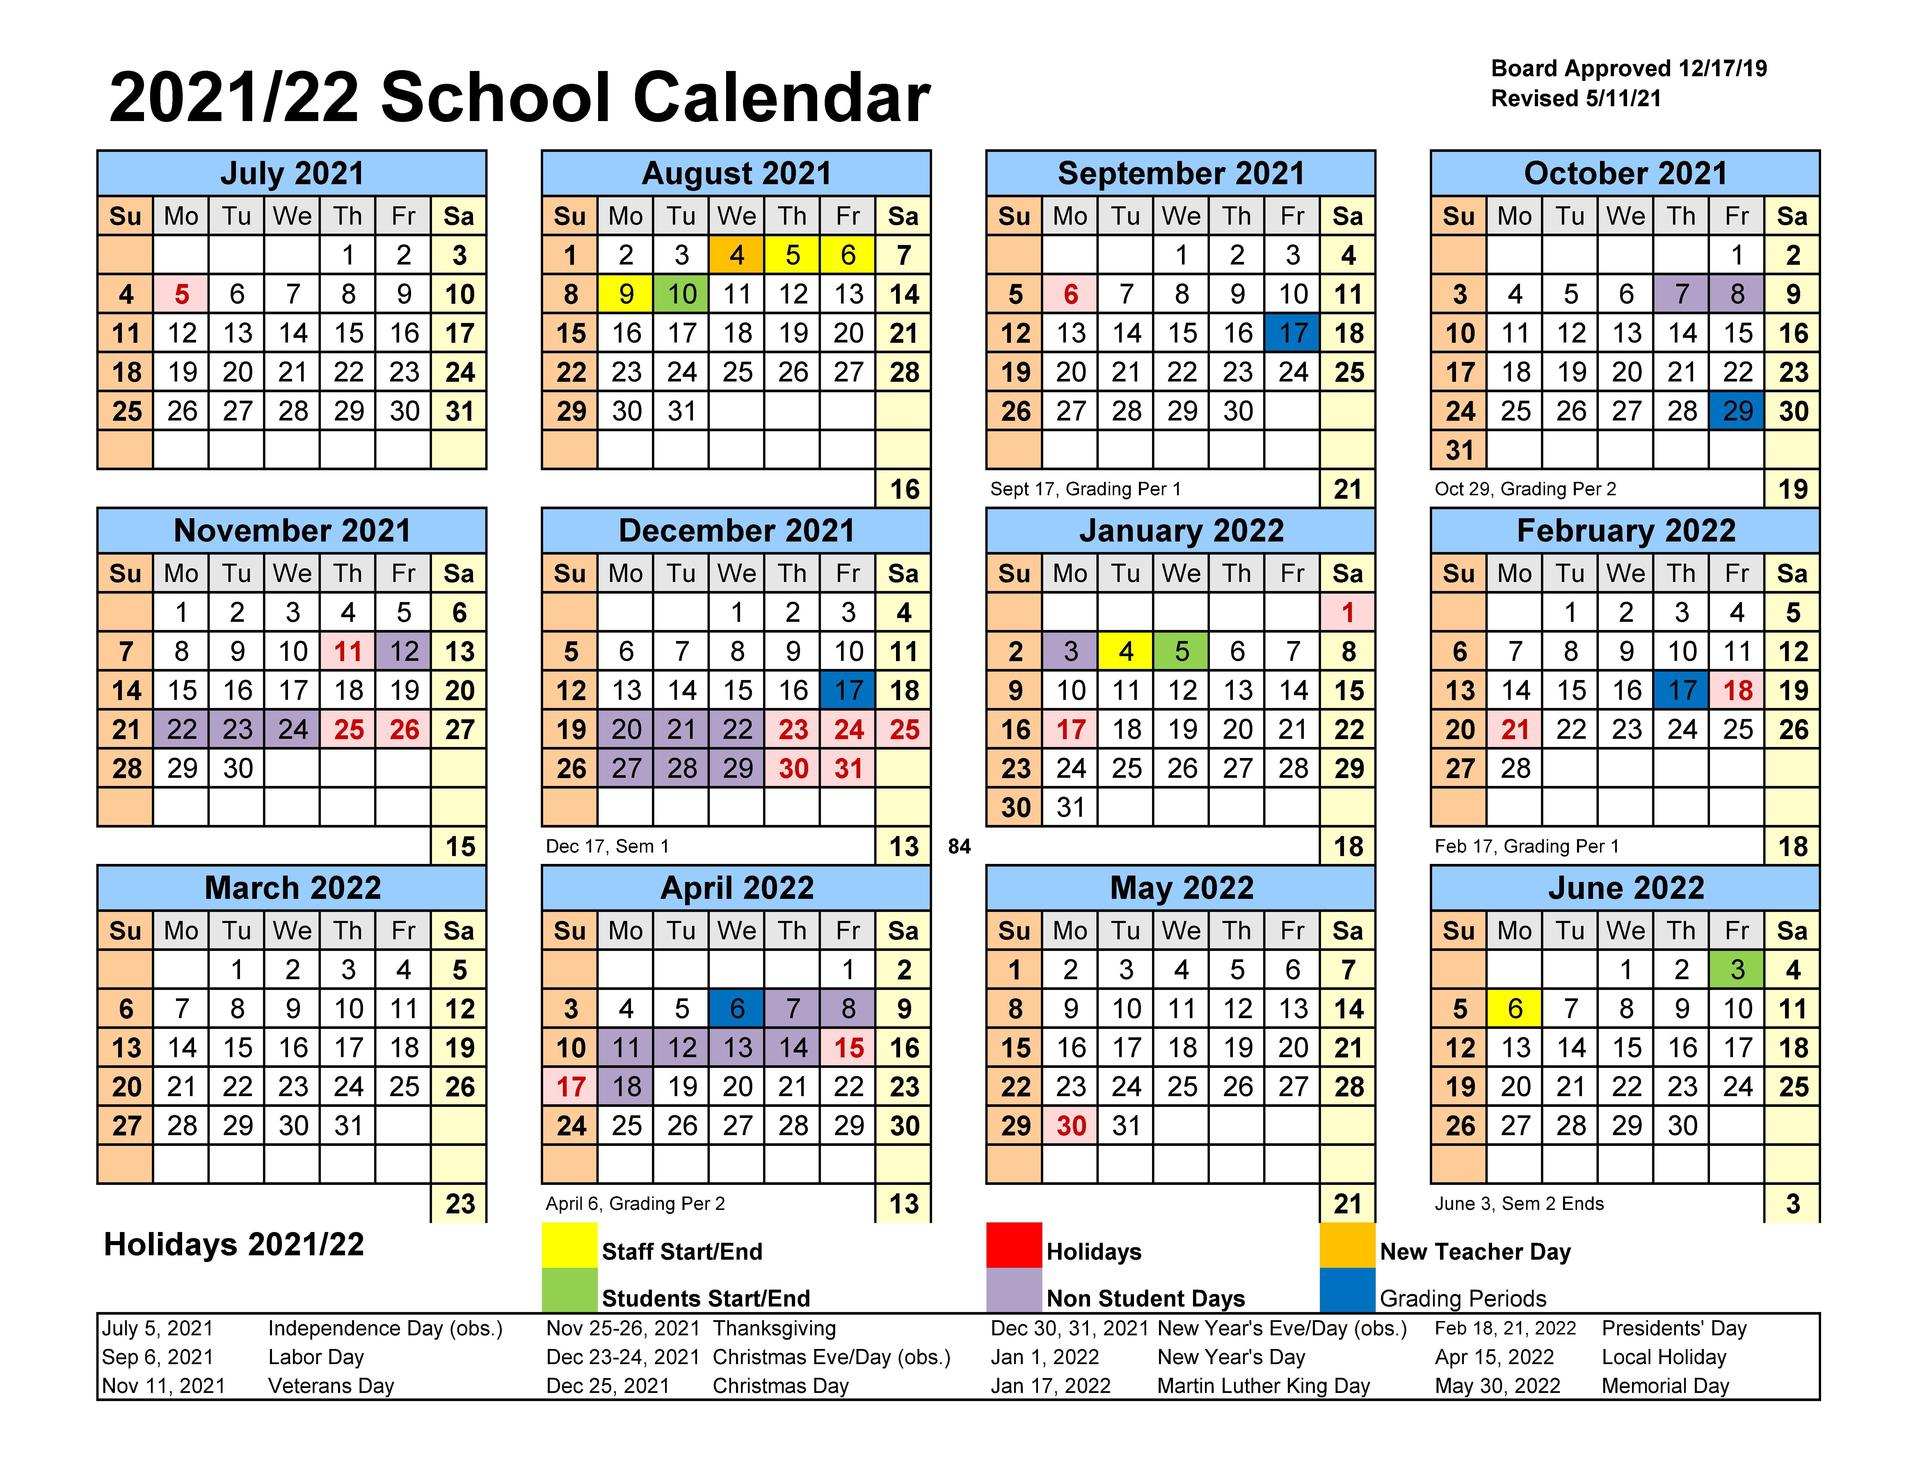 School District Calendar 2022-23 2022 - Schoolcalendars.net